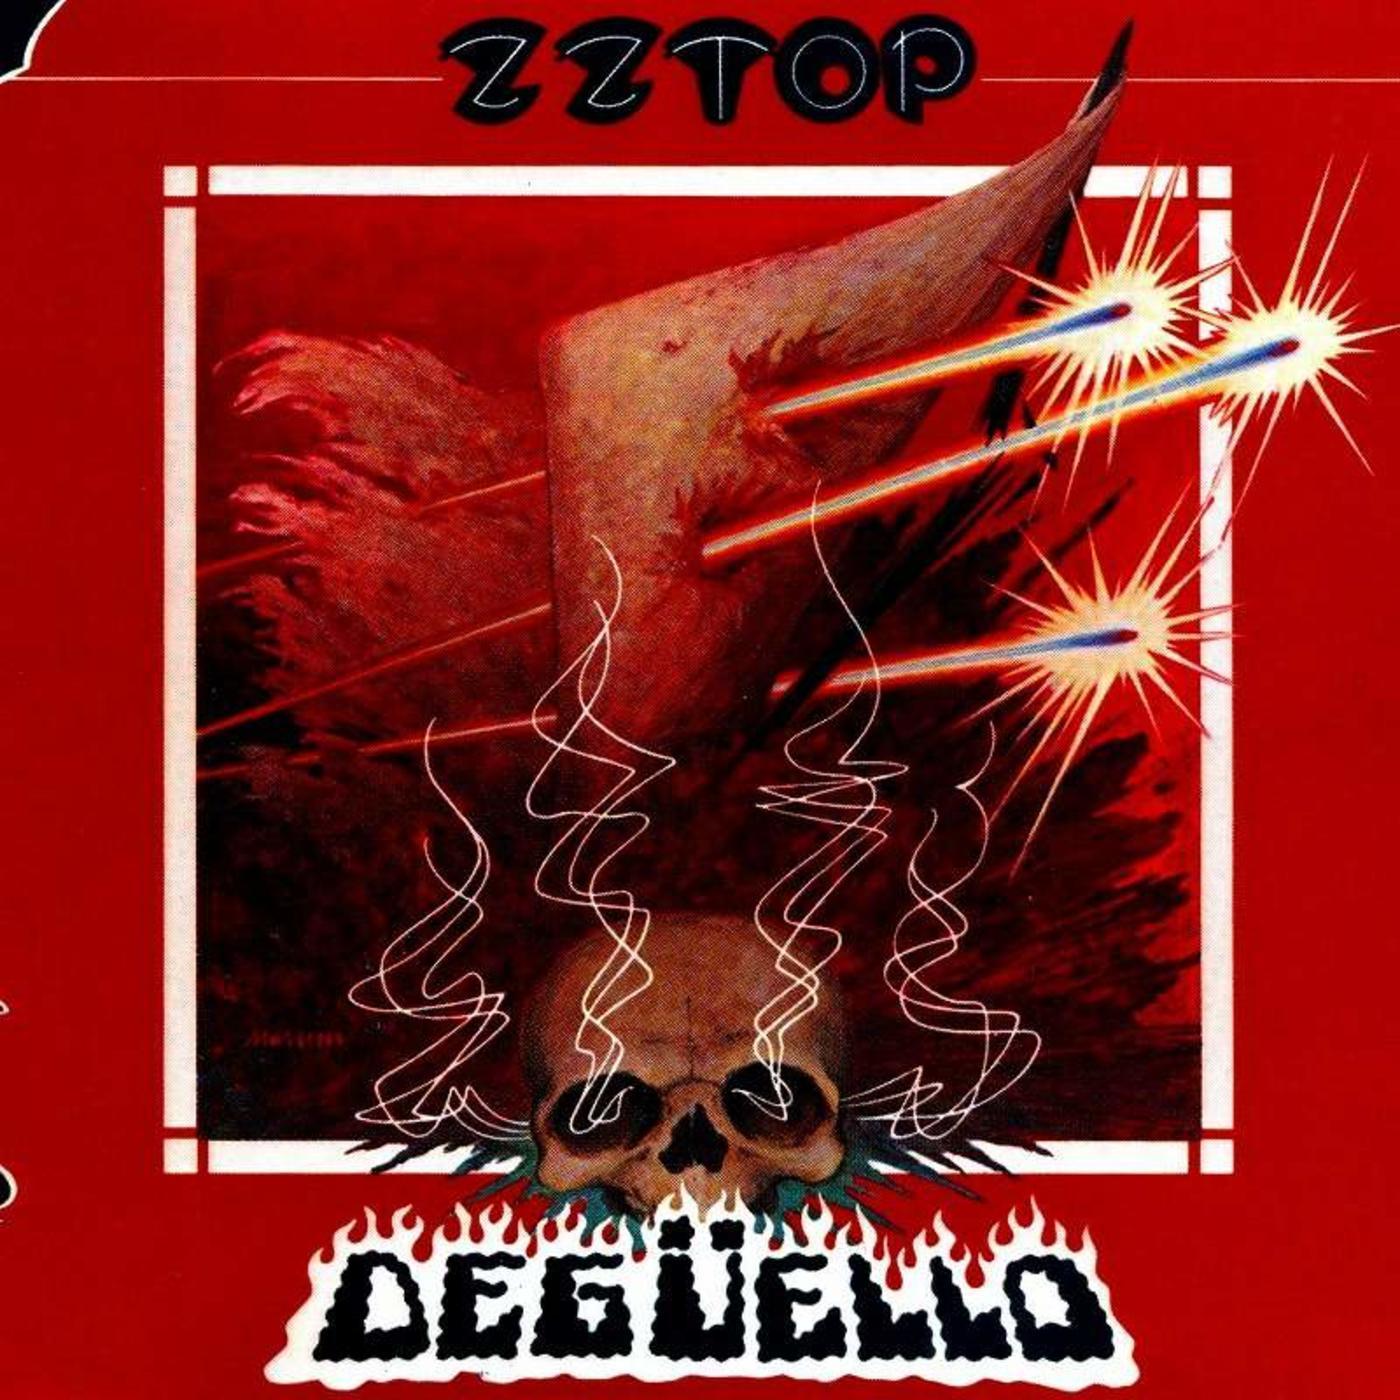 ZZ Top - Deguello - CD - New